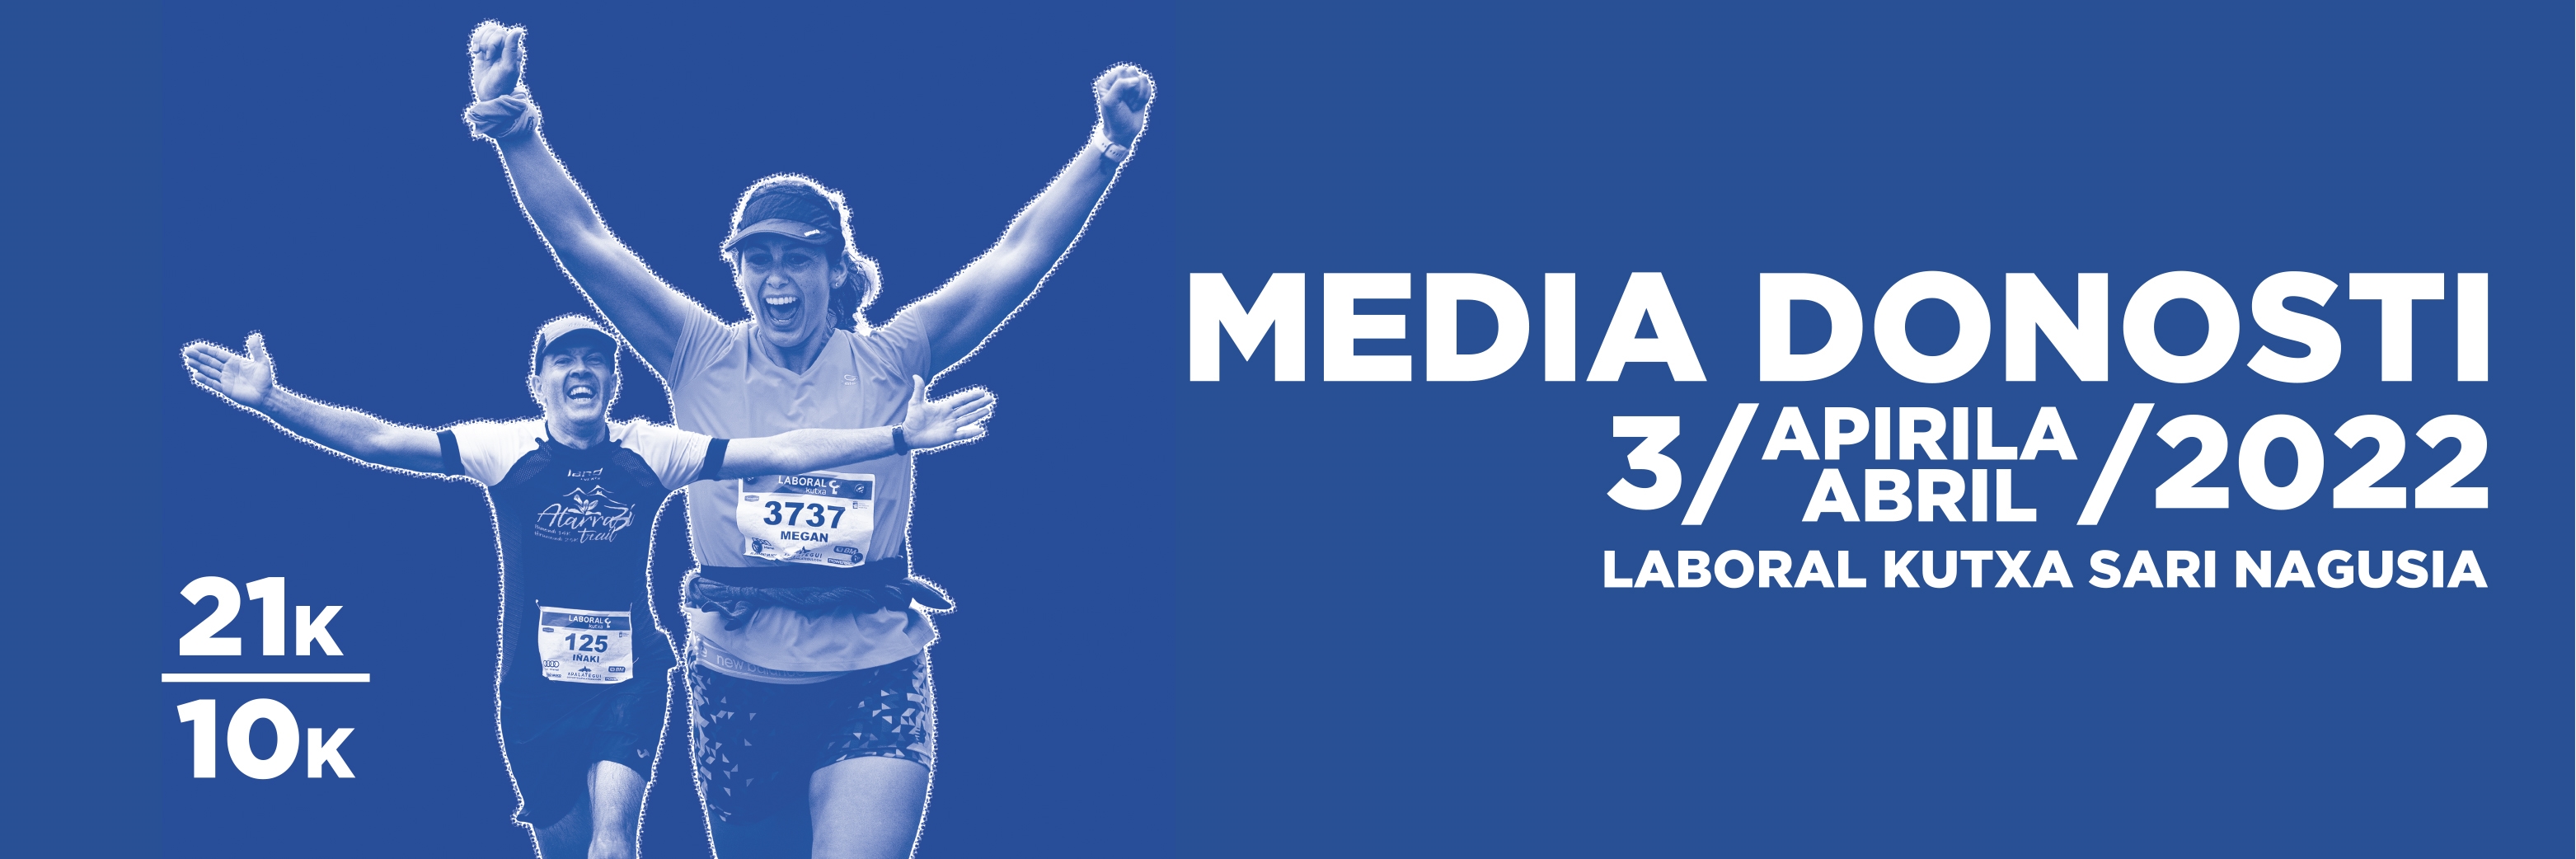 Media Maratón San Sebastián 2022